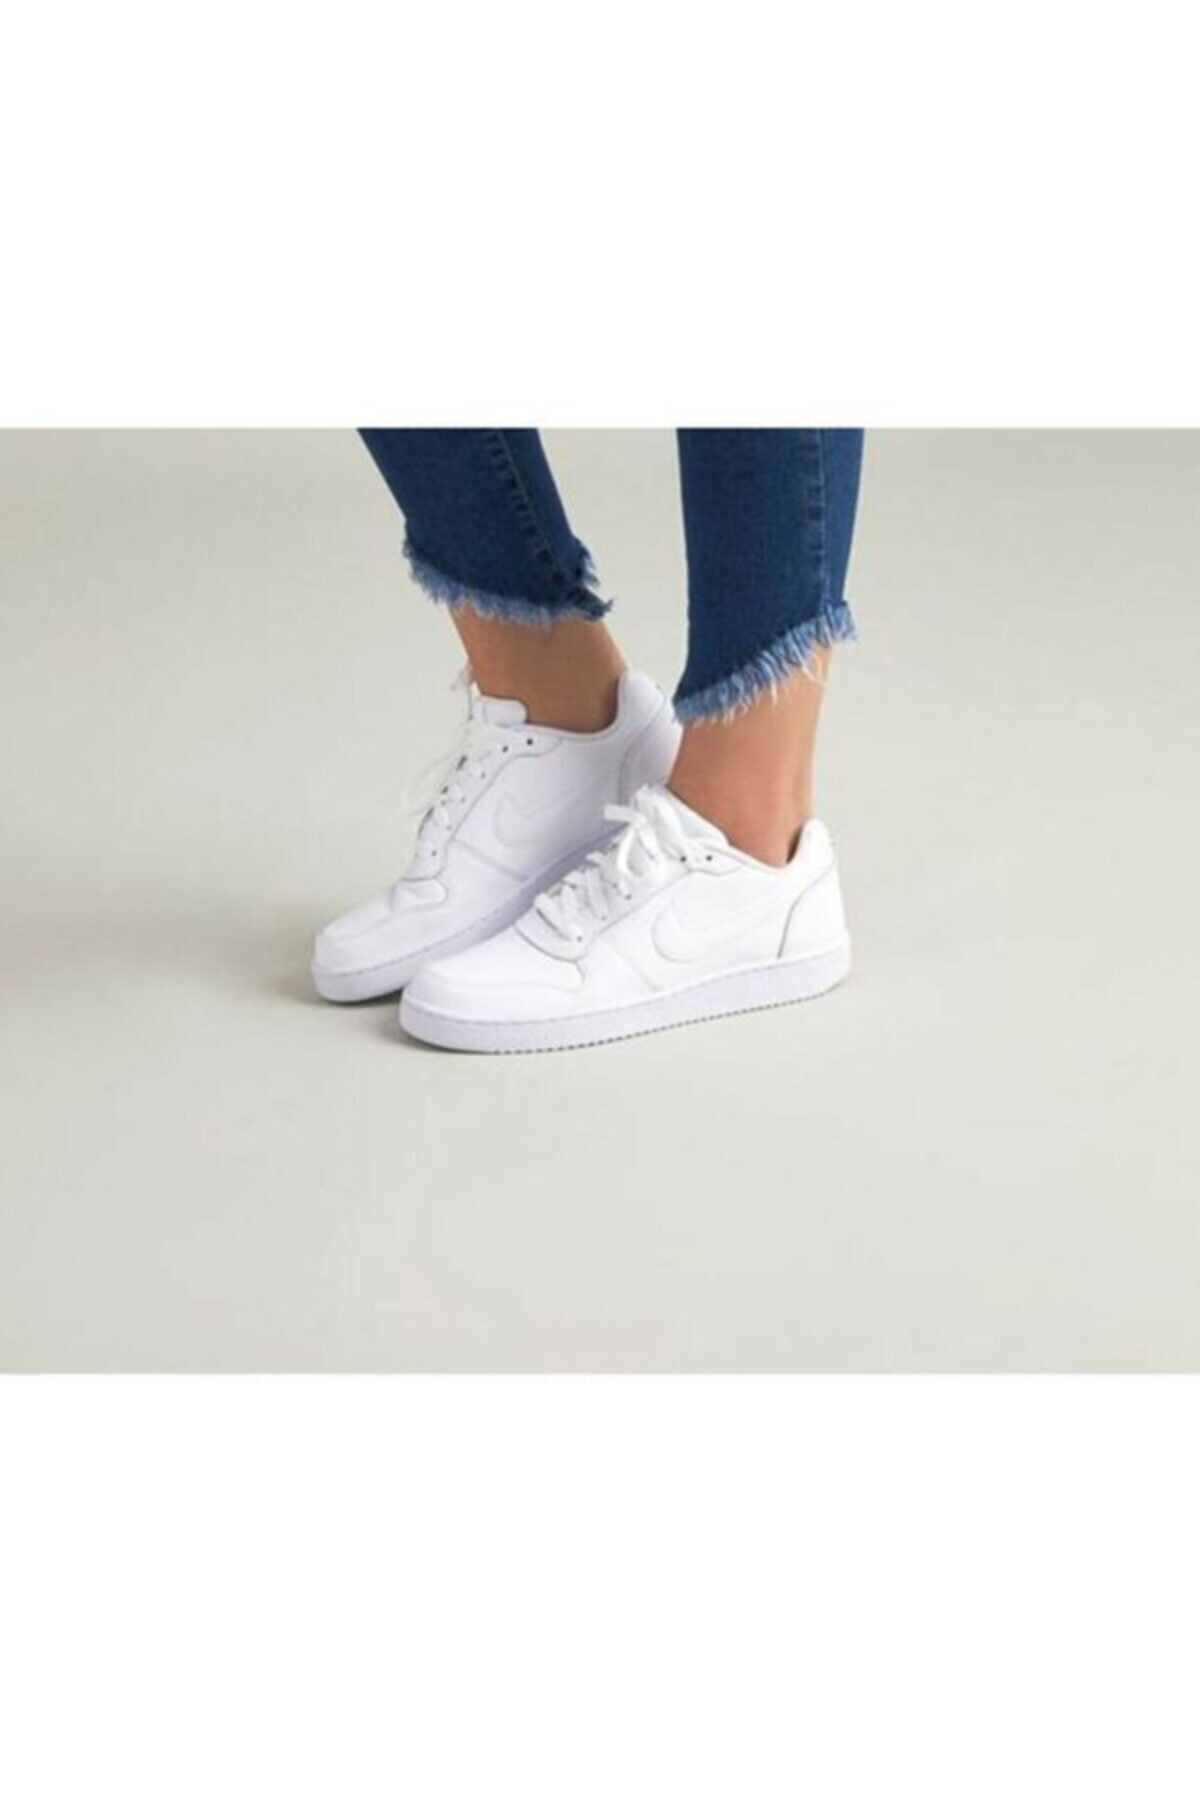 Nike Beyaz - Kadin Sneaker - Wmns Ebernon Low - Aq1779-100